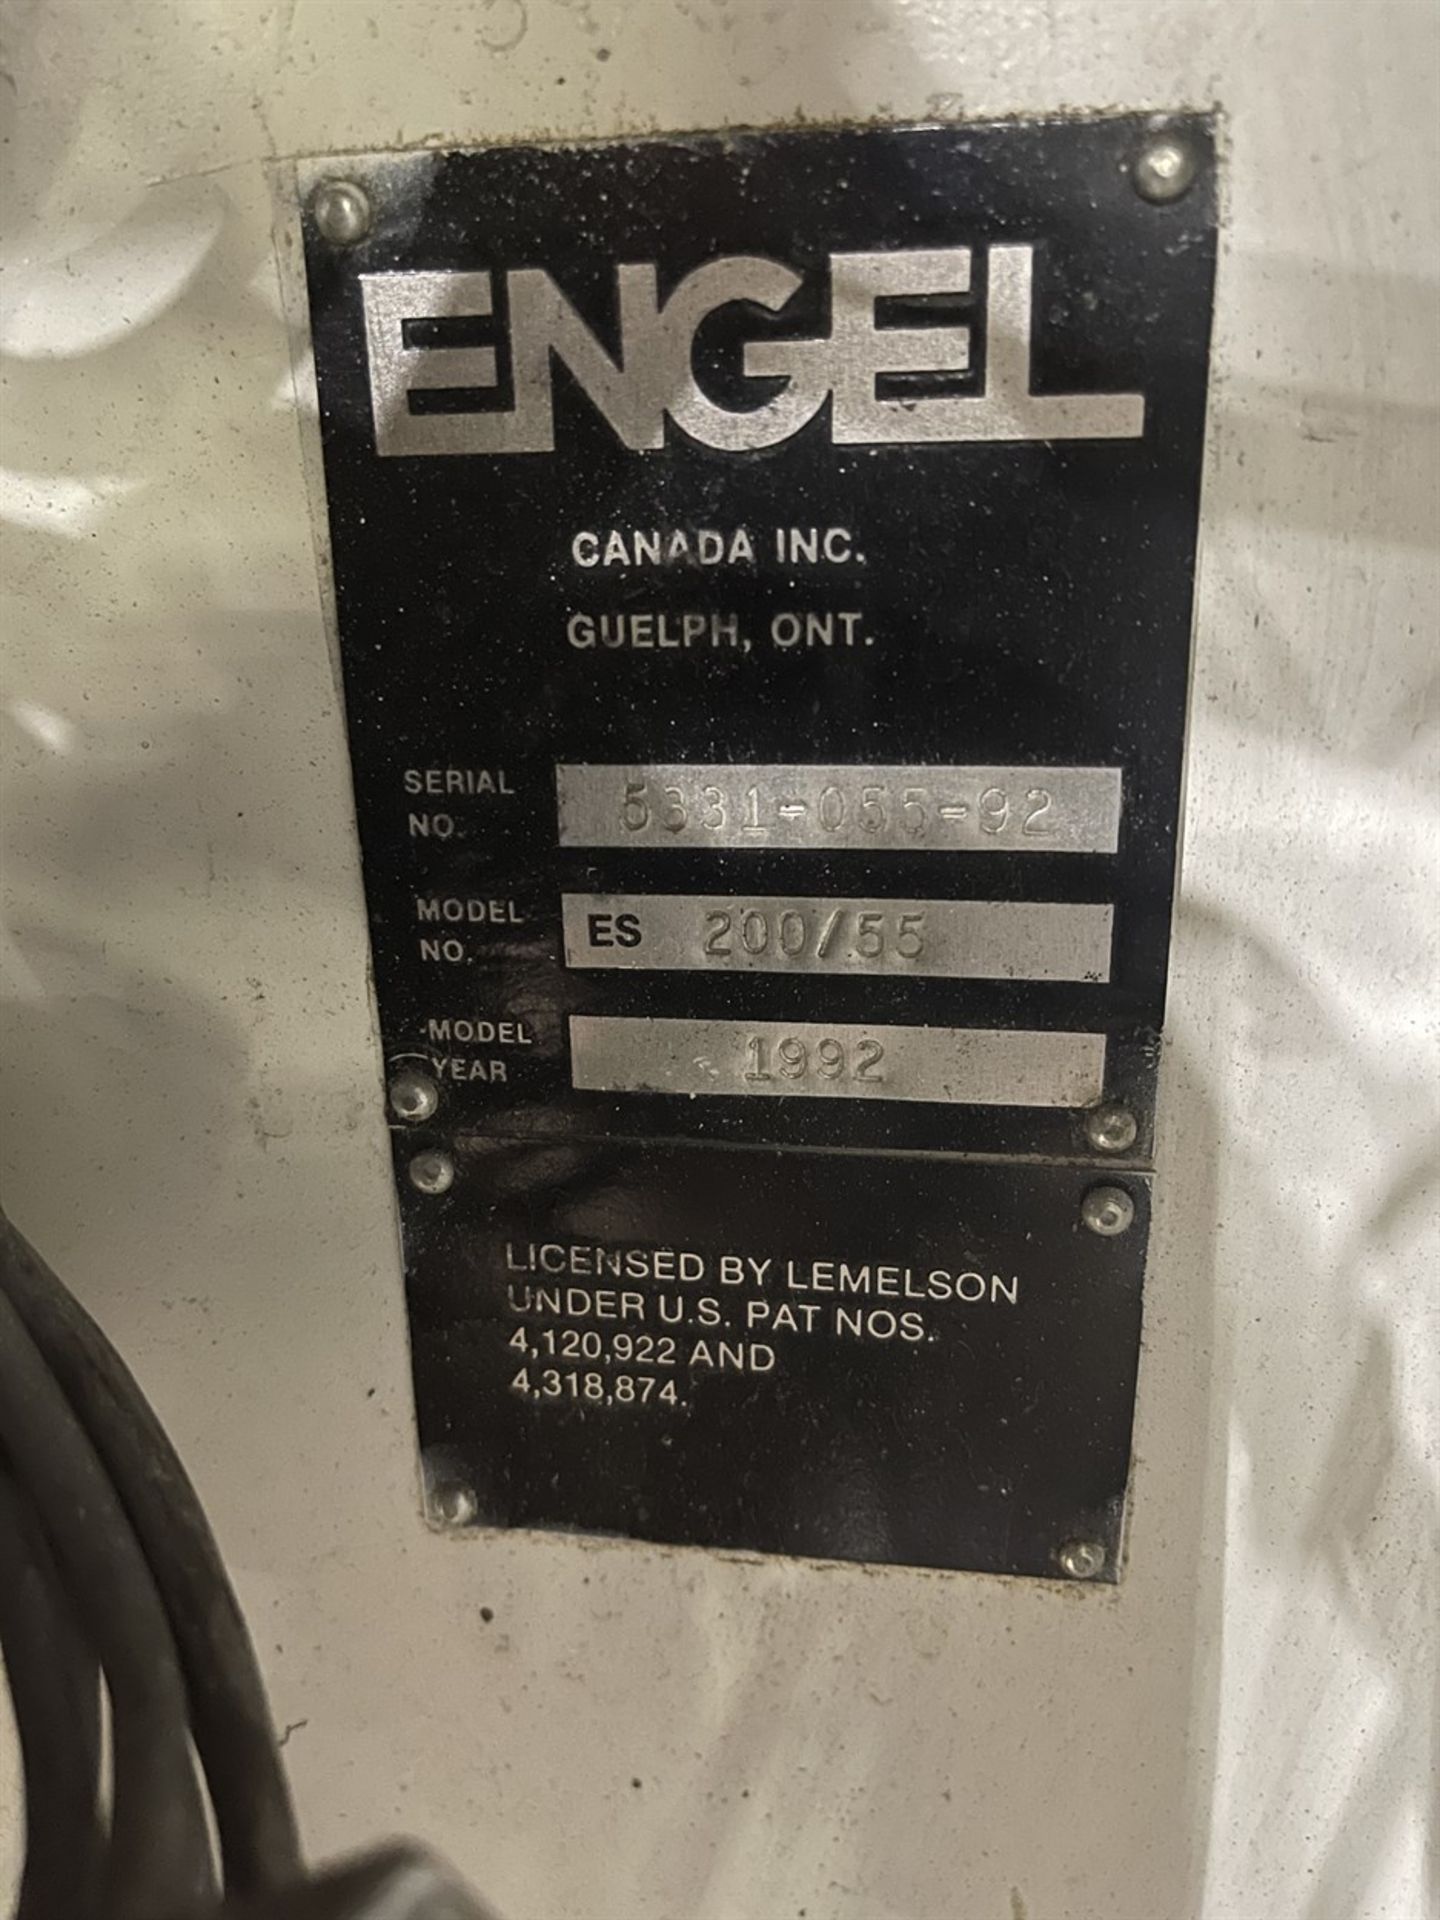 55 Ton ENGEL ES 200/55 Hydraulic Injection Molder, s/n 5331/055/92, w/ CC-90 Control, 2.2 oz. Shot - Image 10 of 10